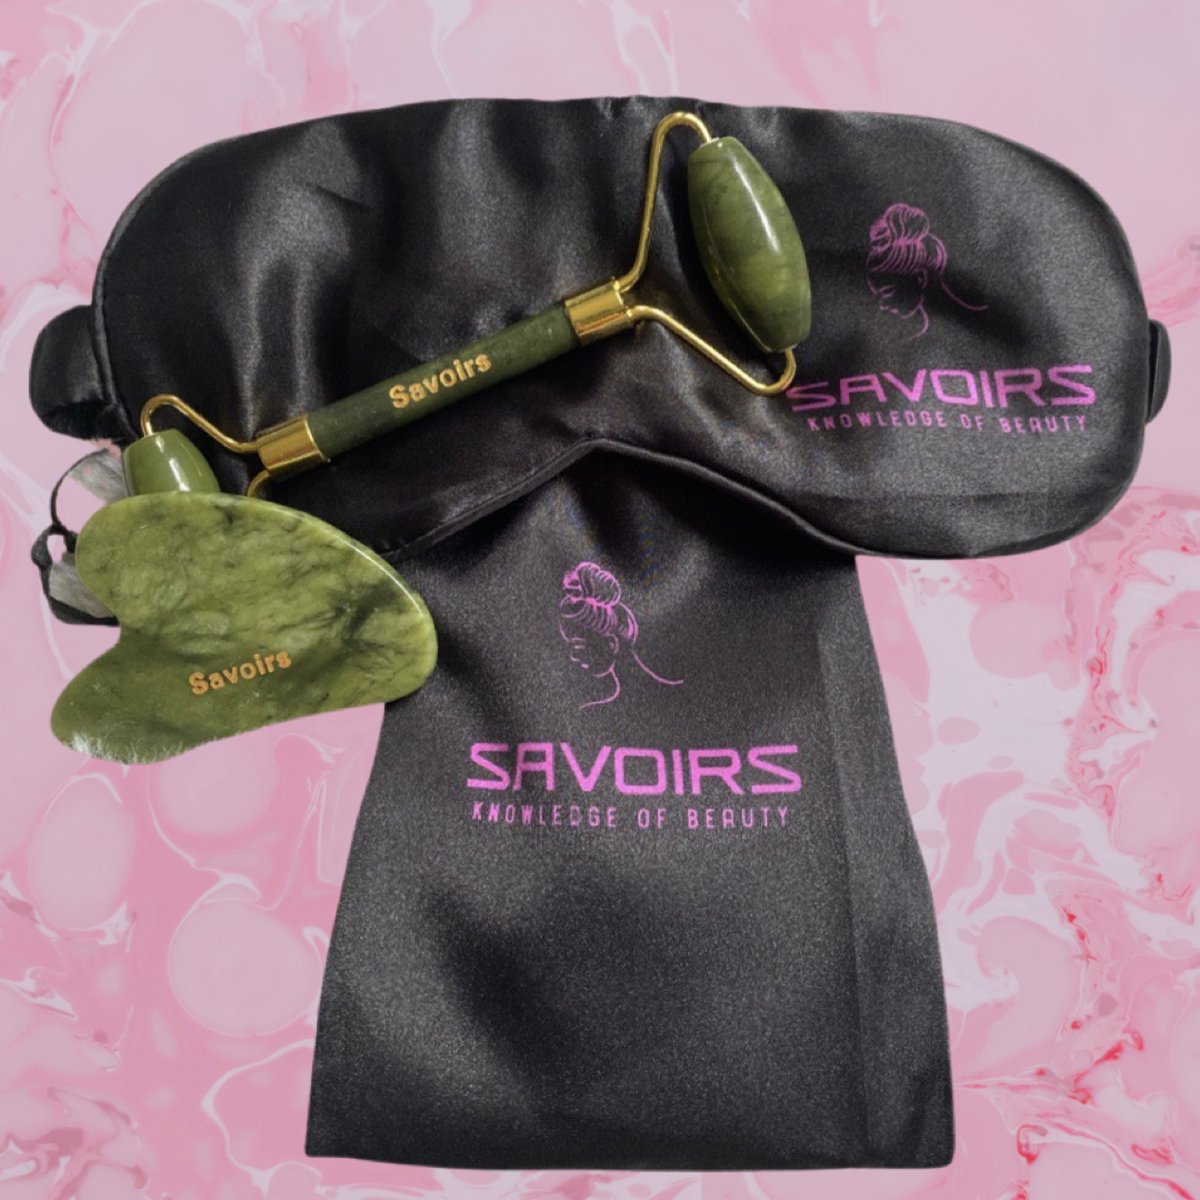 SAVOIRS Jade Roller Gua Sha set - Groen Jade roller tweedelig - Anti-aging gezicht massage inclusief twee drawstring bags en keus uit slaapmasker of haarband roze,zwart ,wit.